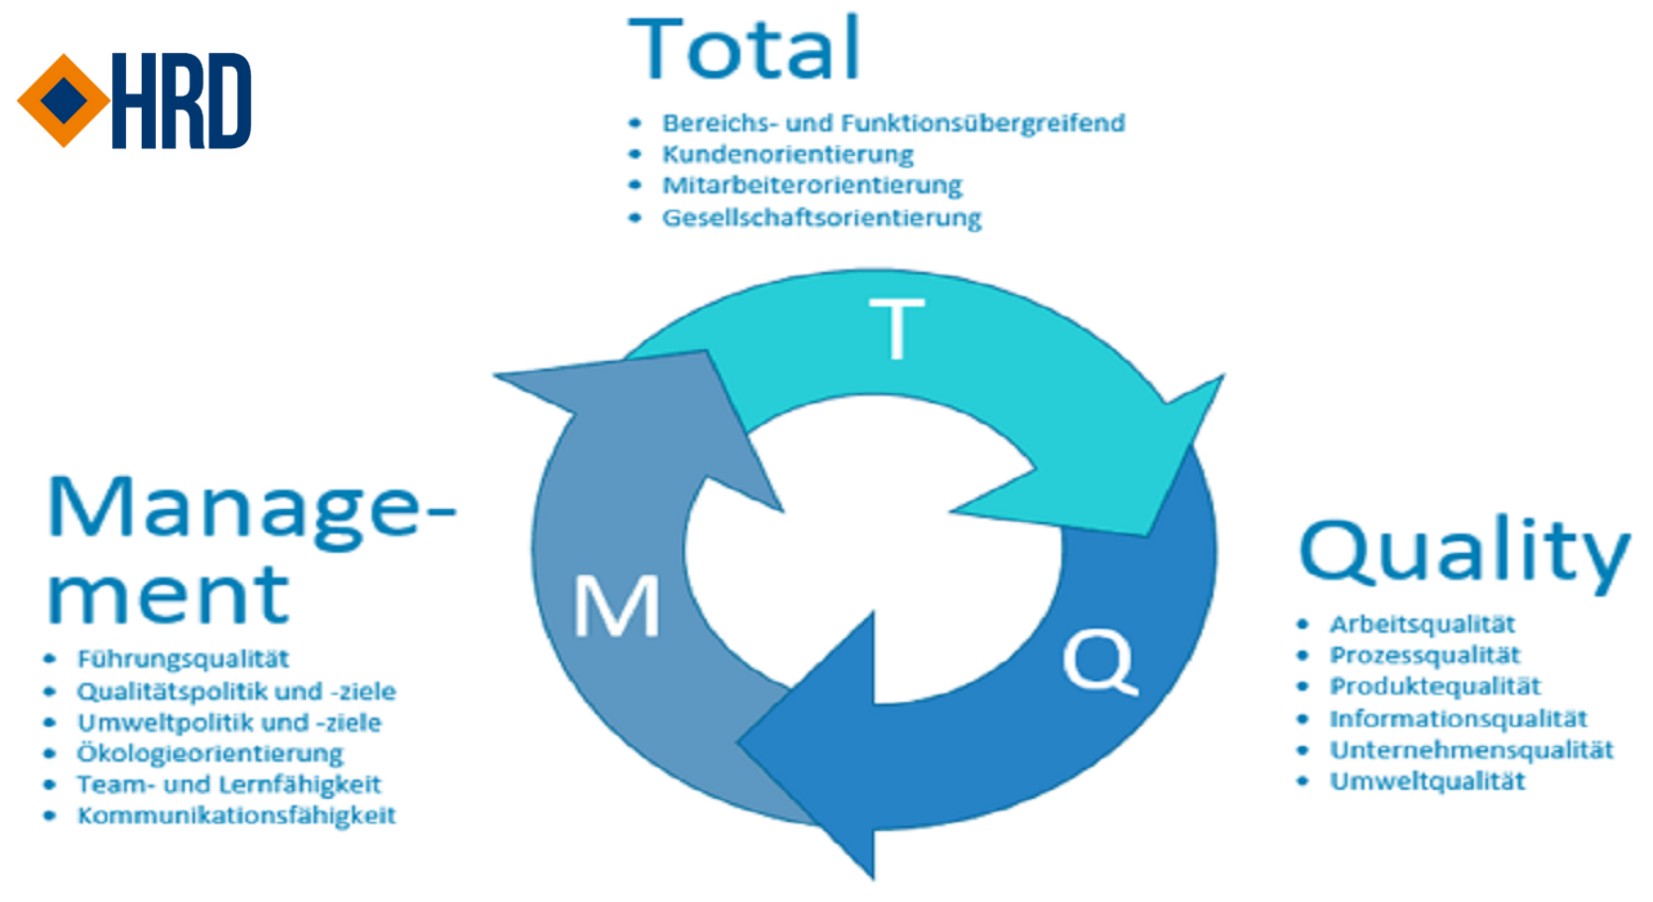 Quản lý sản xuất tối ưu bằng hệ thống quản lý chất lượng toàn diện TQM